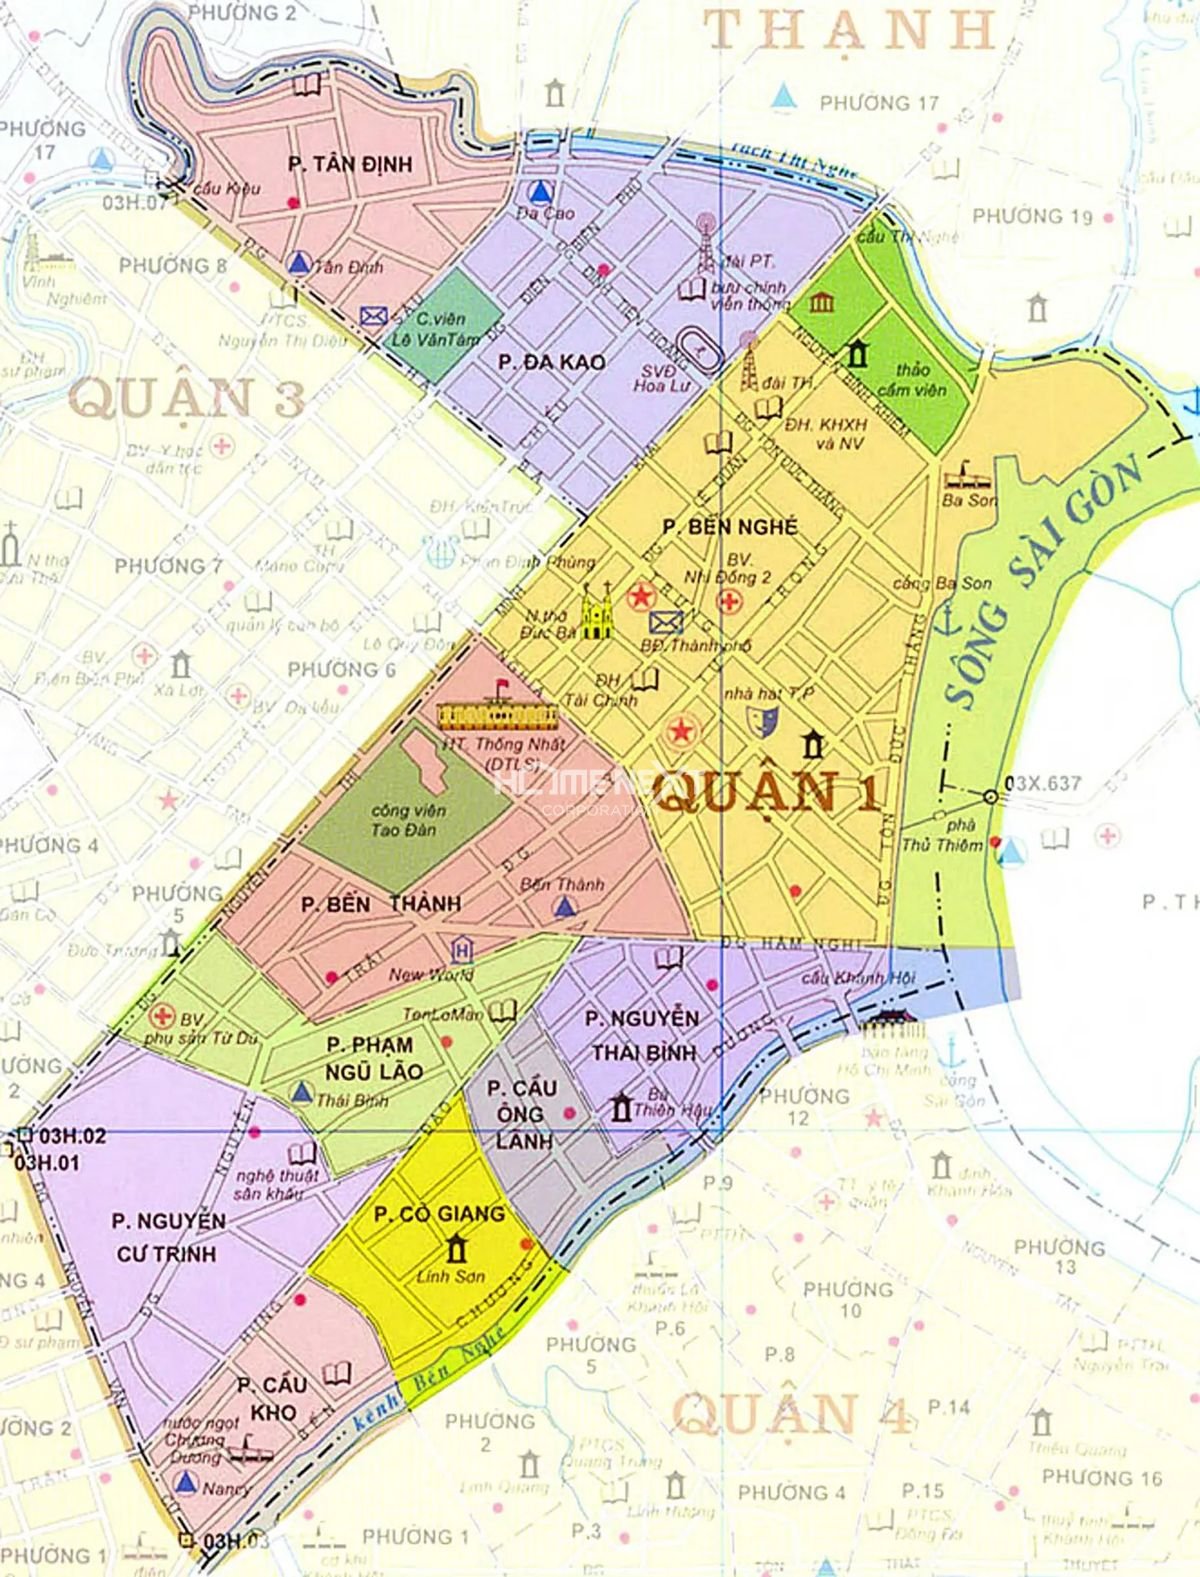 Chia sẻ bản đồ quận nhất thành phố Hồ Chí Minh chi tiết và đầy đủ